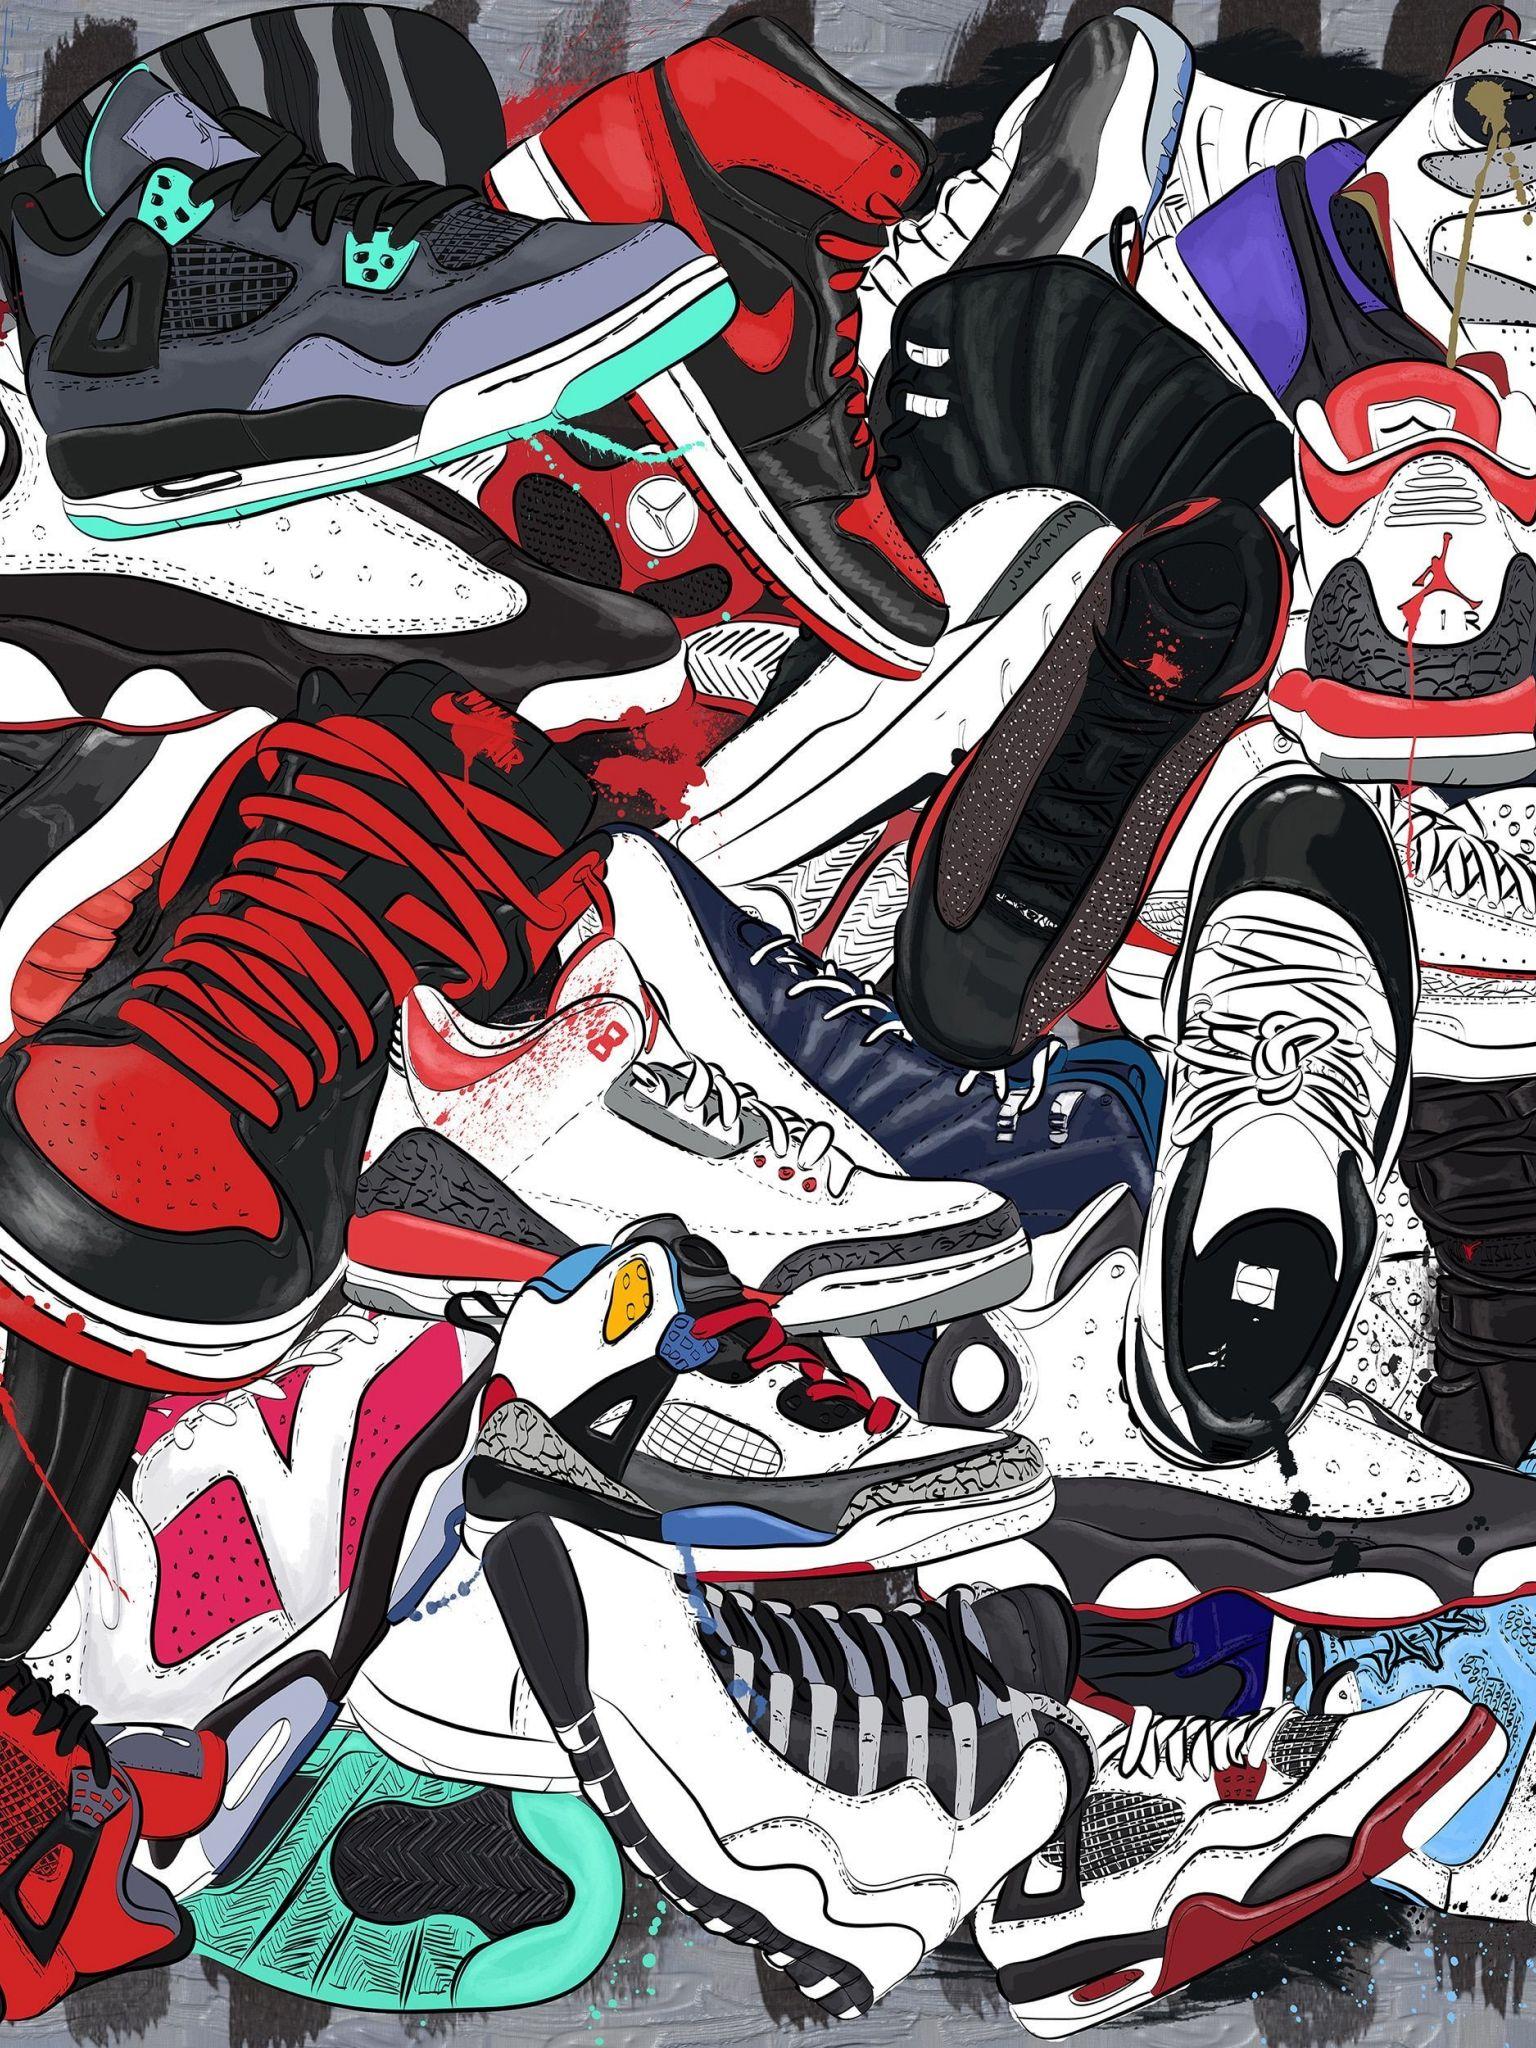 Móc khoá 2D trang trí hình giày sneaker  P653413  Sàn thương mại điện tử  của khách hàng Viettelpost